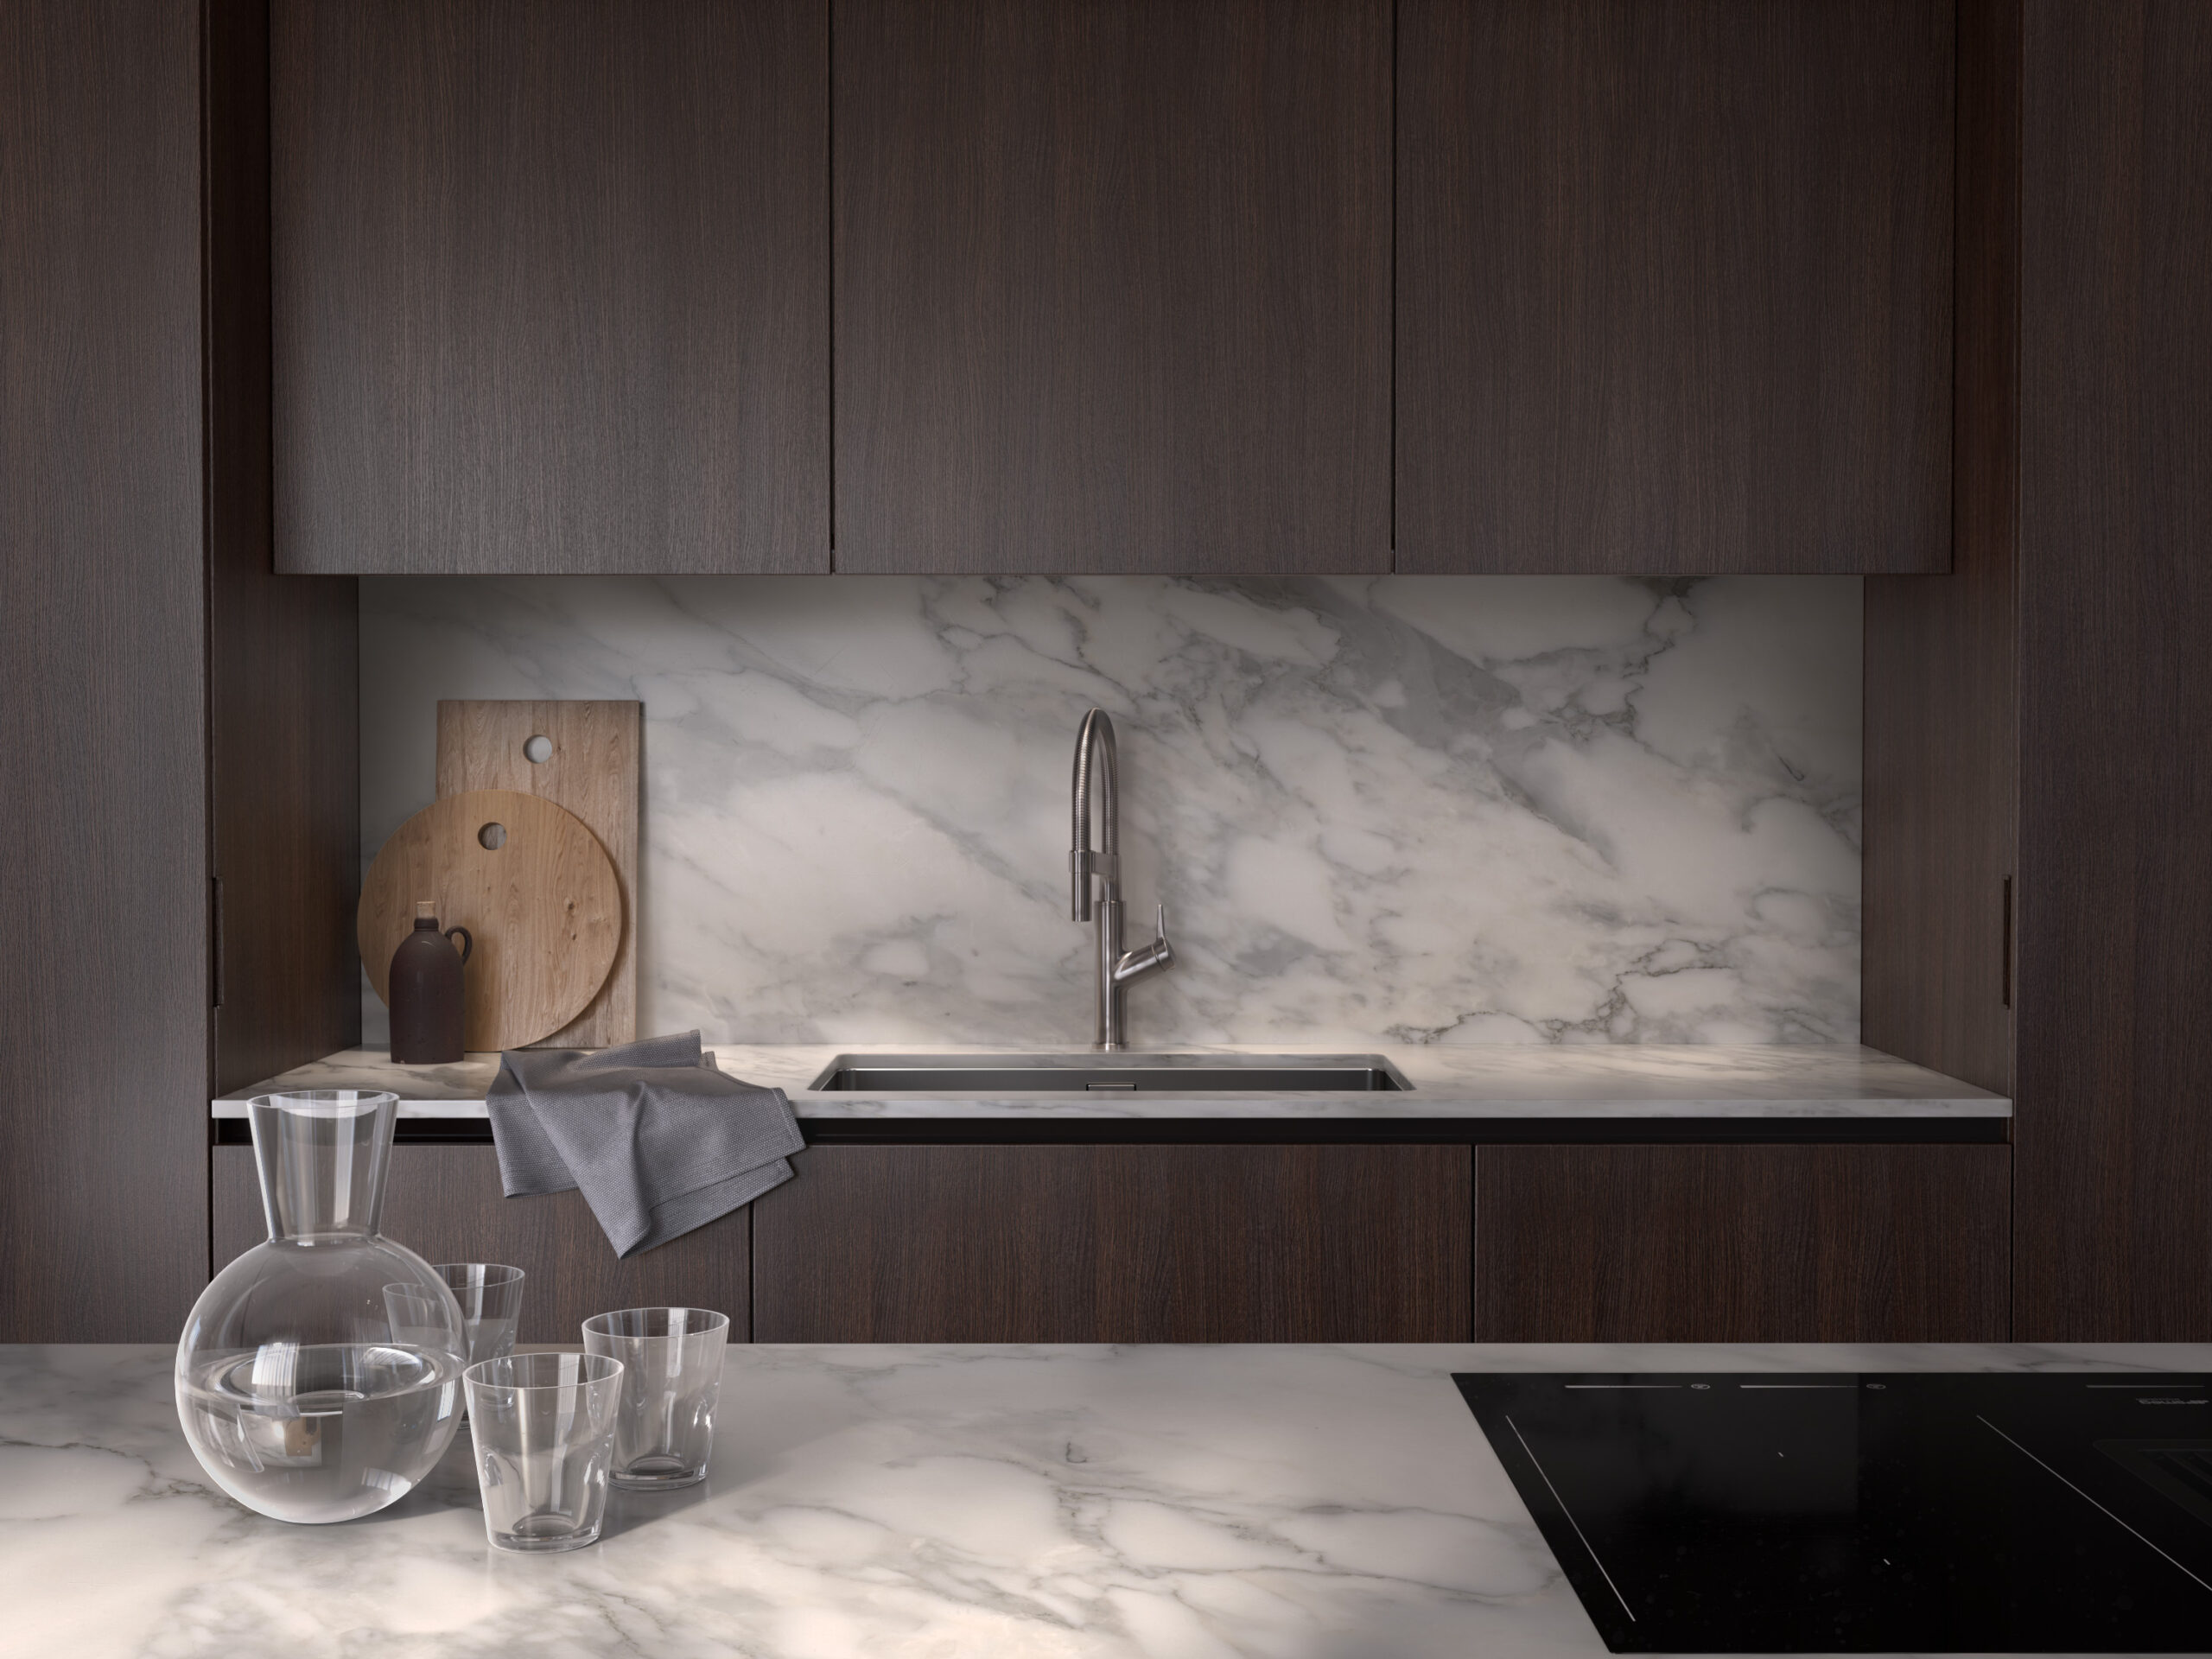 Stiligt - Ett platsbyggt kök med bänkskivor i marmor och träskåp.